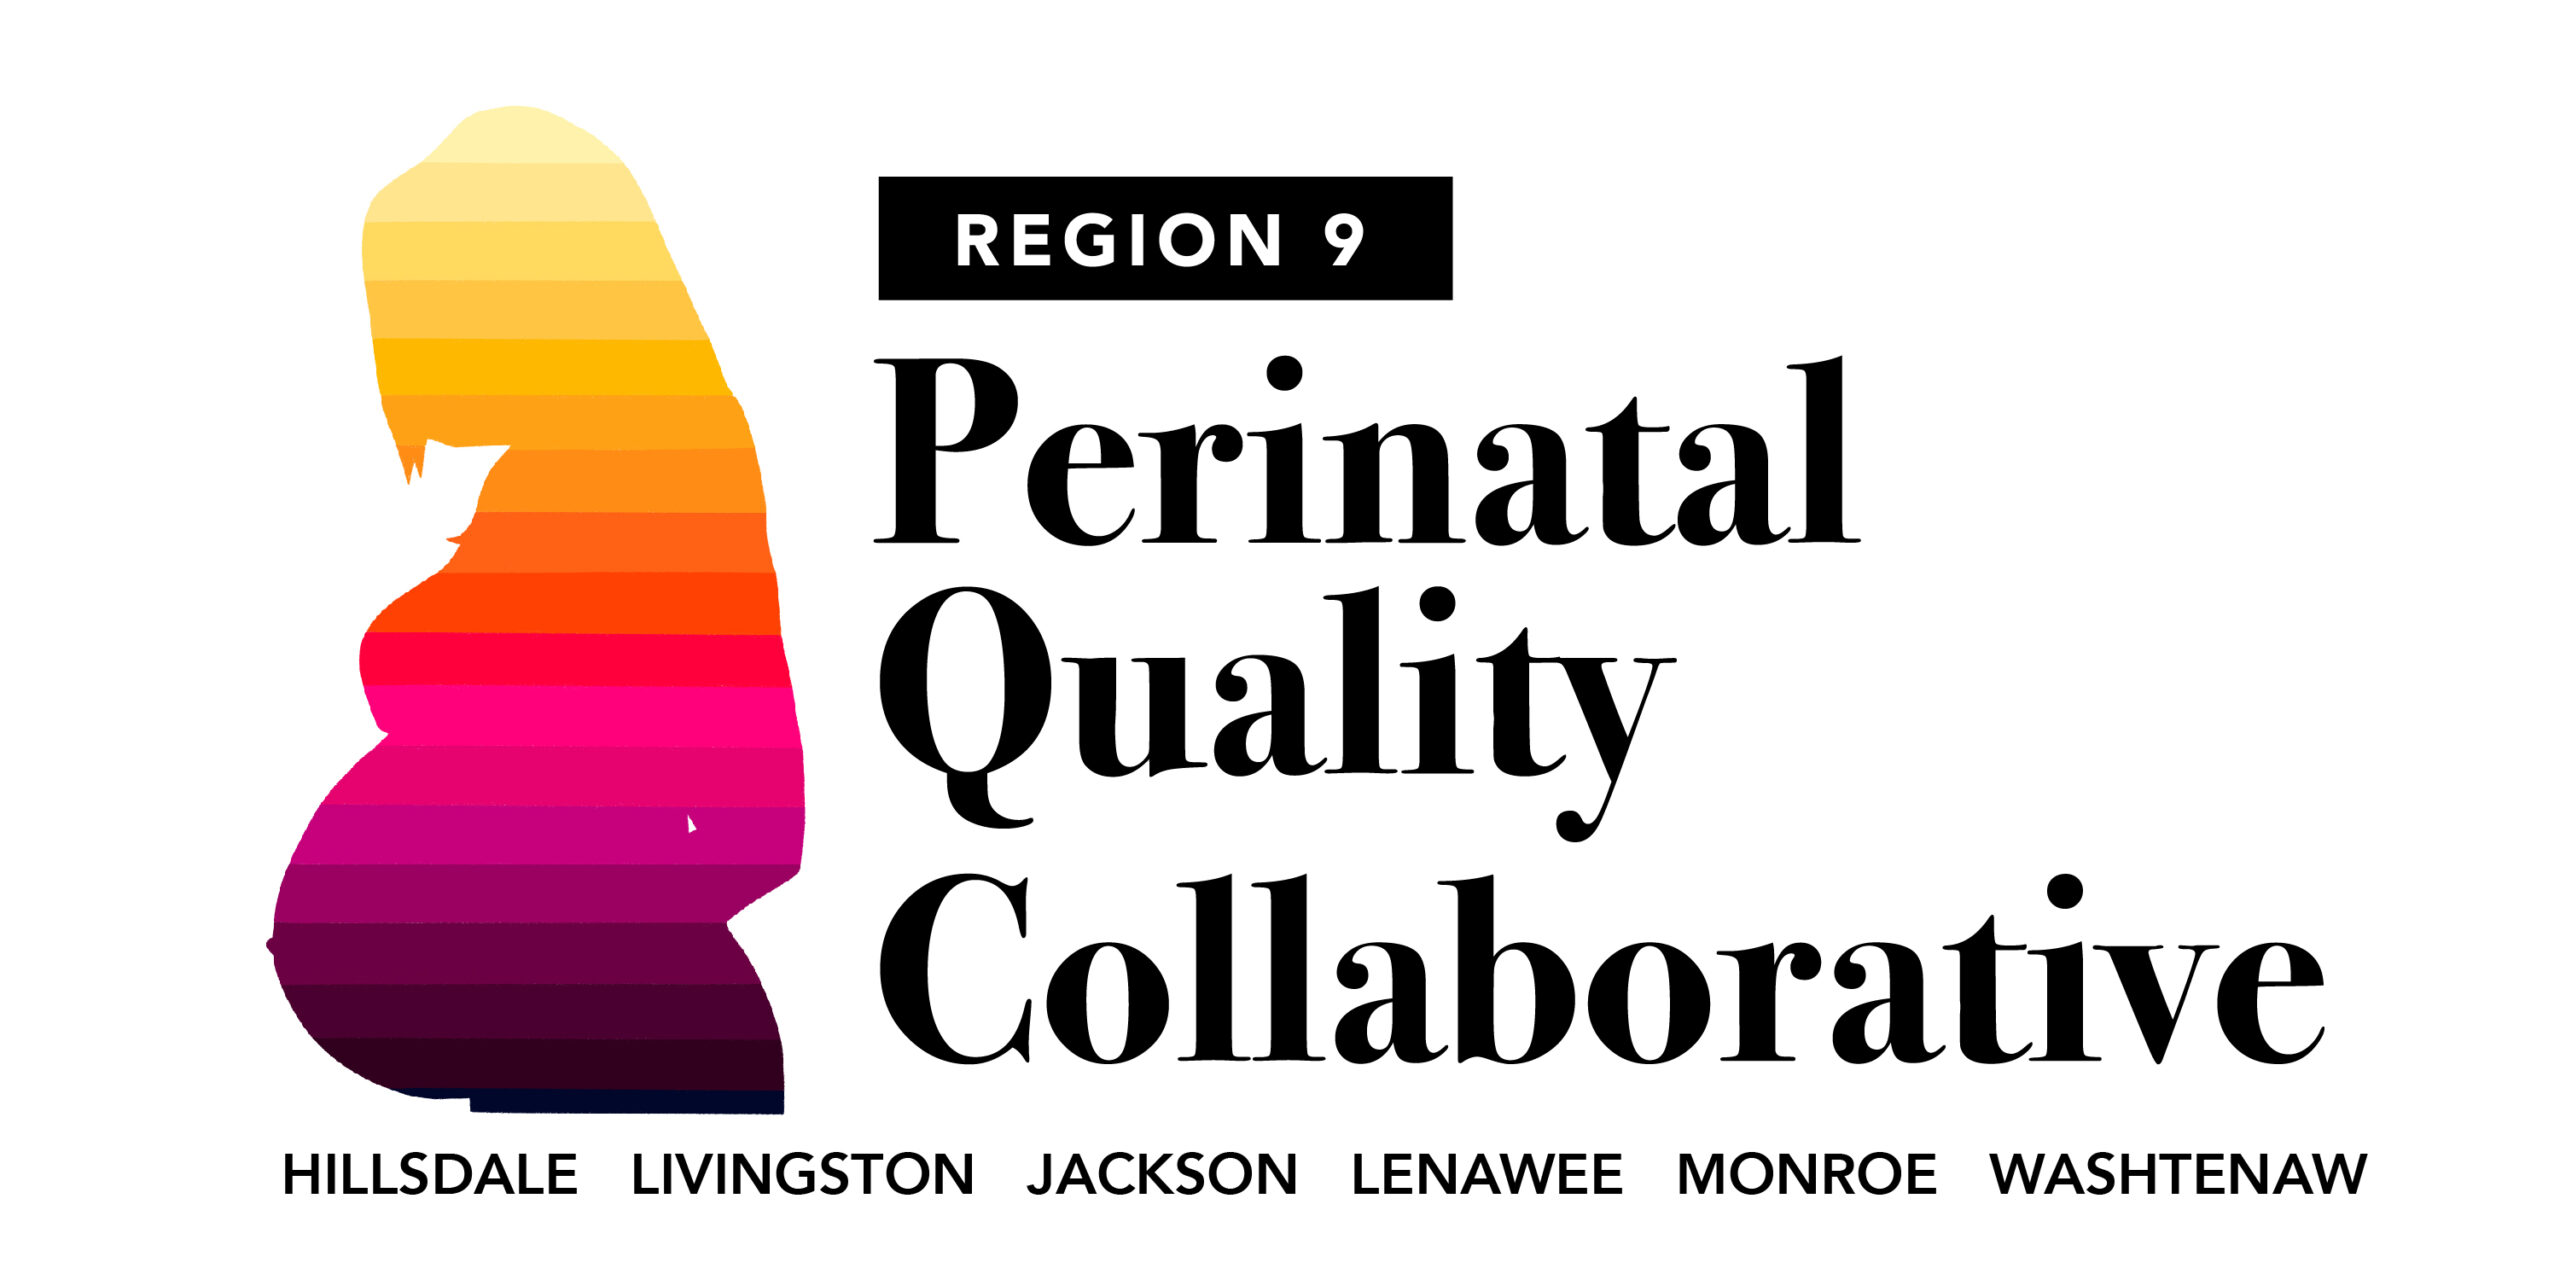 Region 9 Perinatal Quality Collaborative